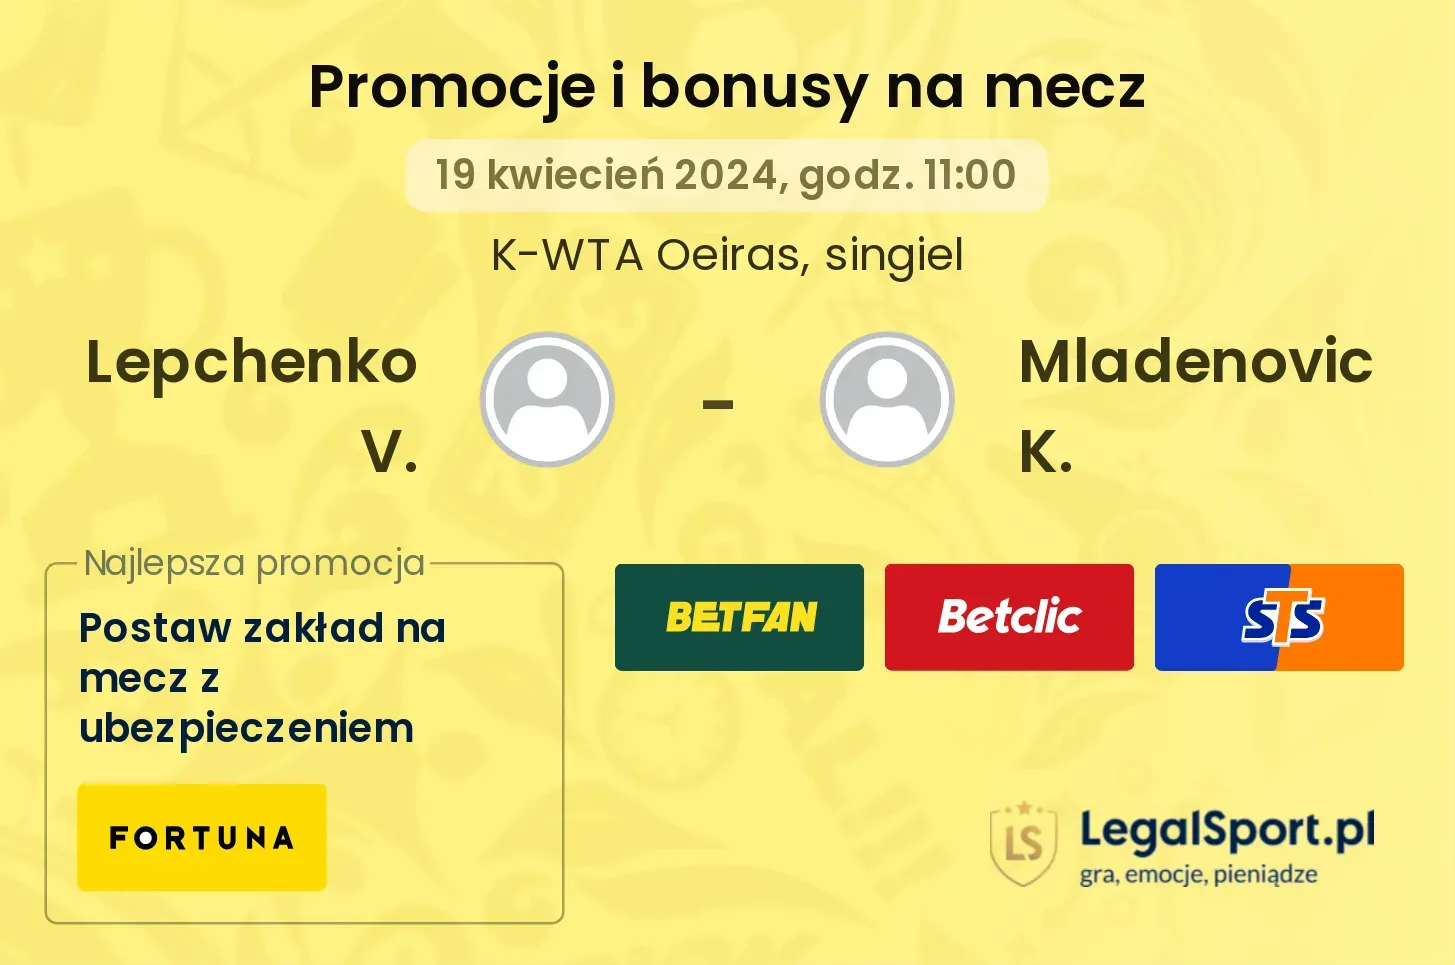 Lepchenko V. - Mladenovic K. promocje bonusy na mecz